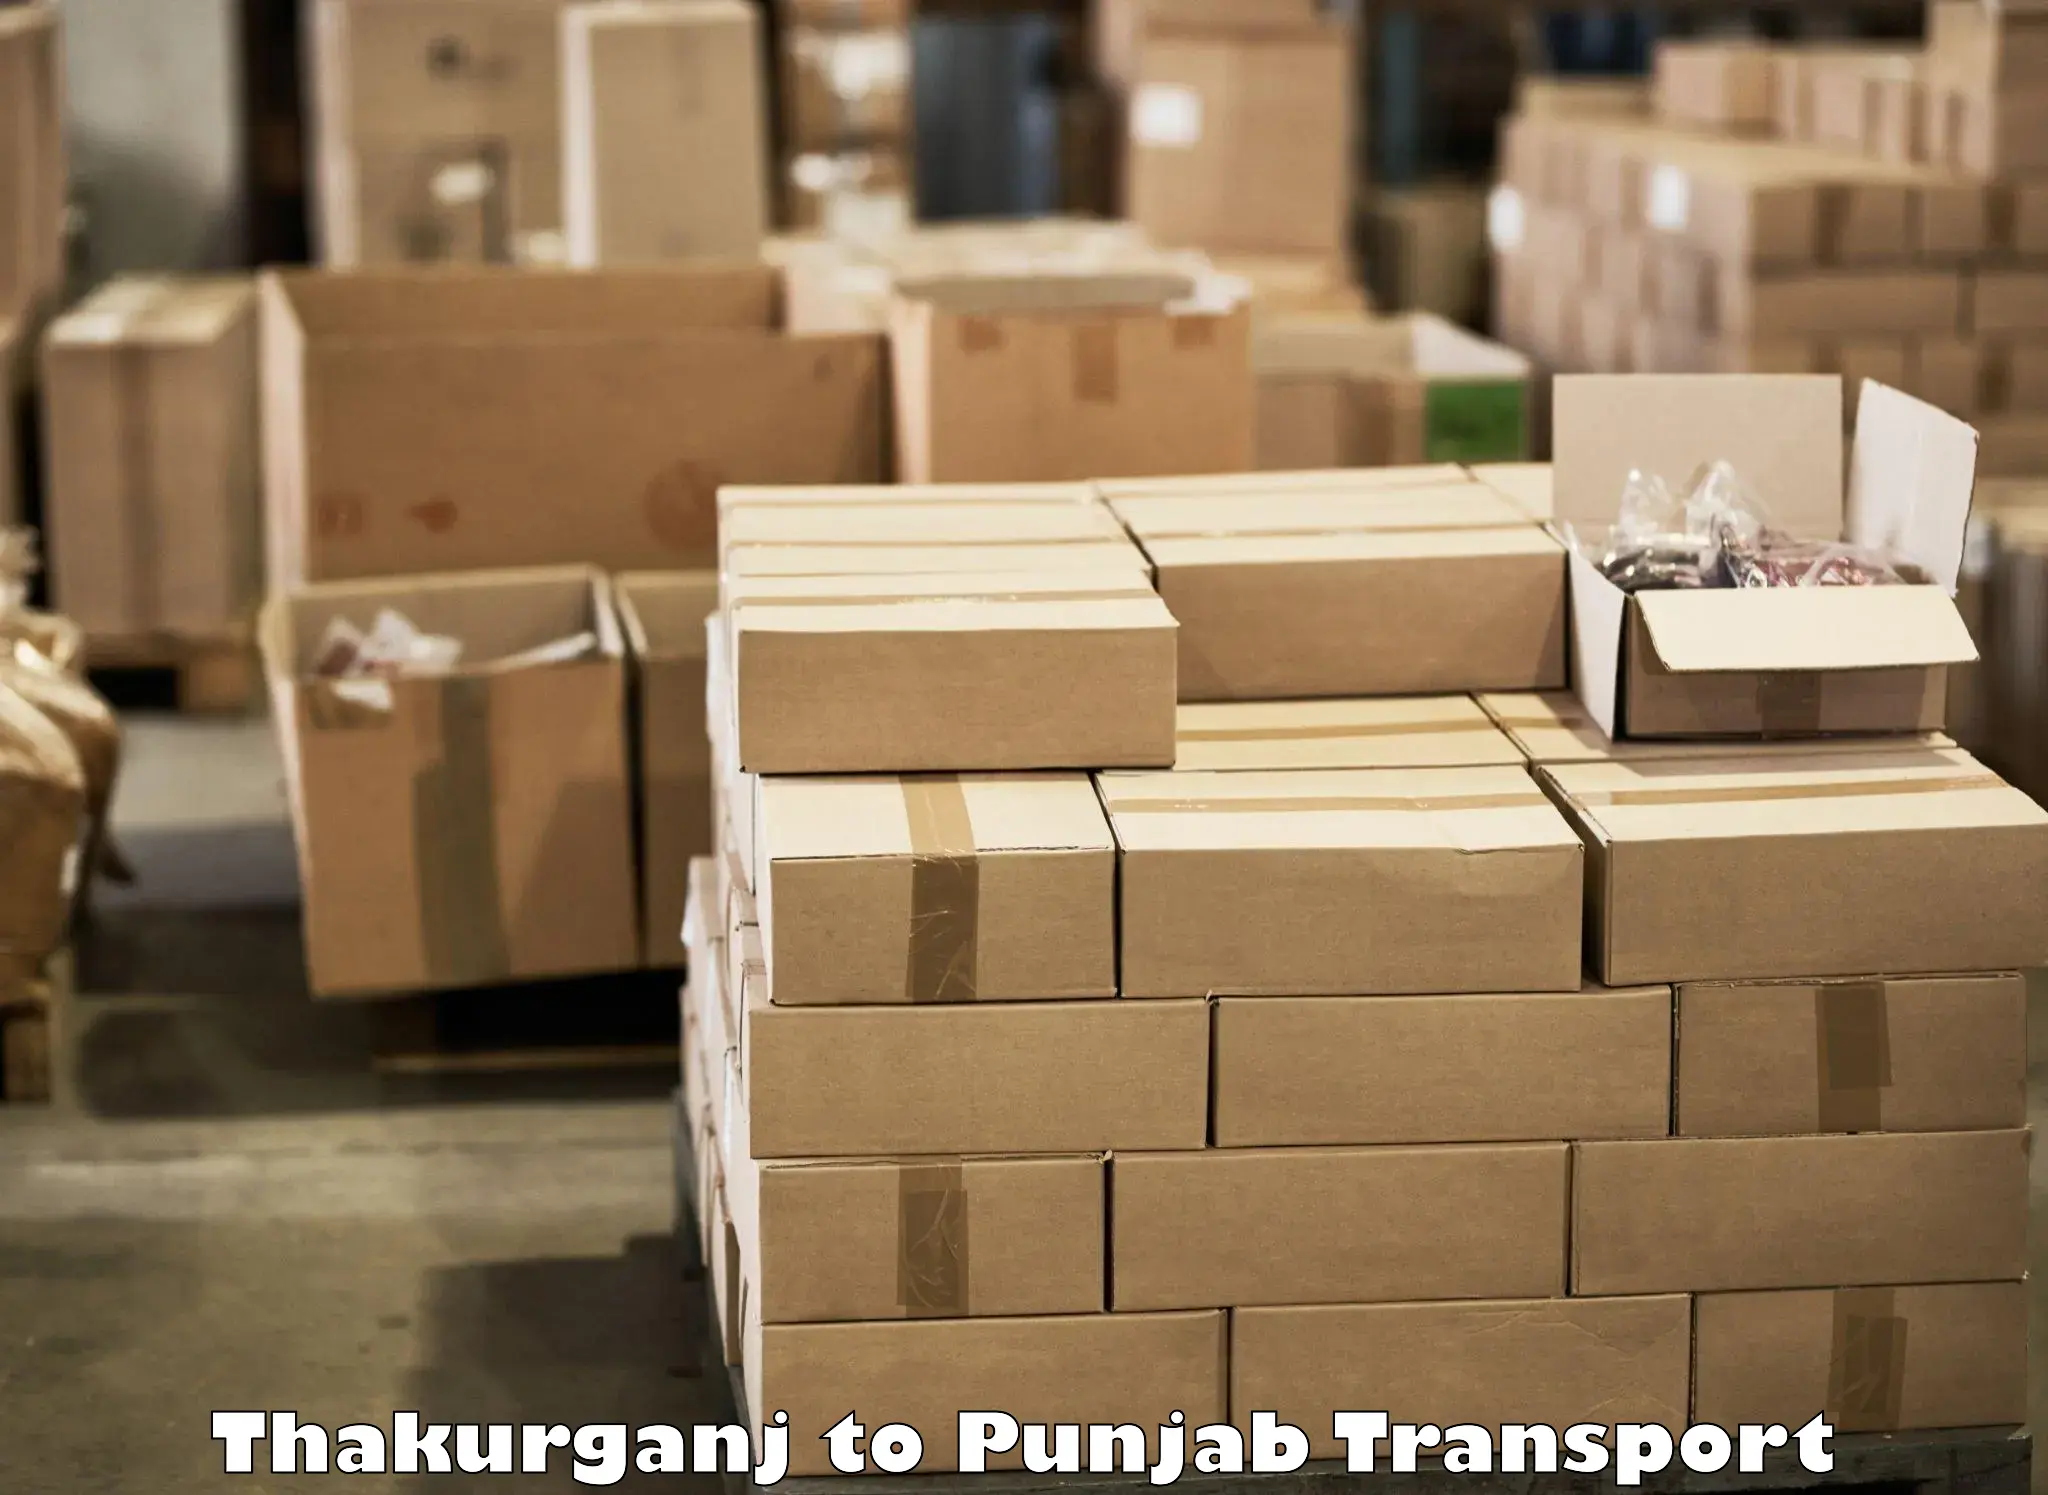 Road transport services Thakurganj to Punjab